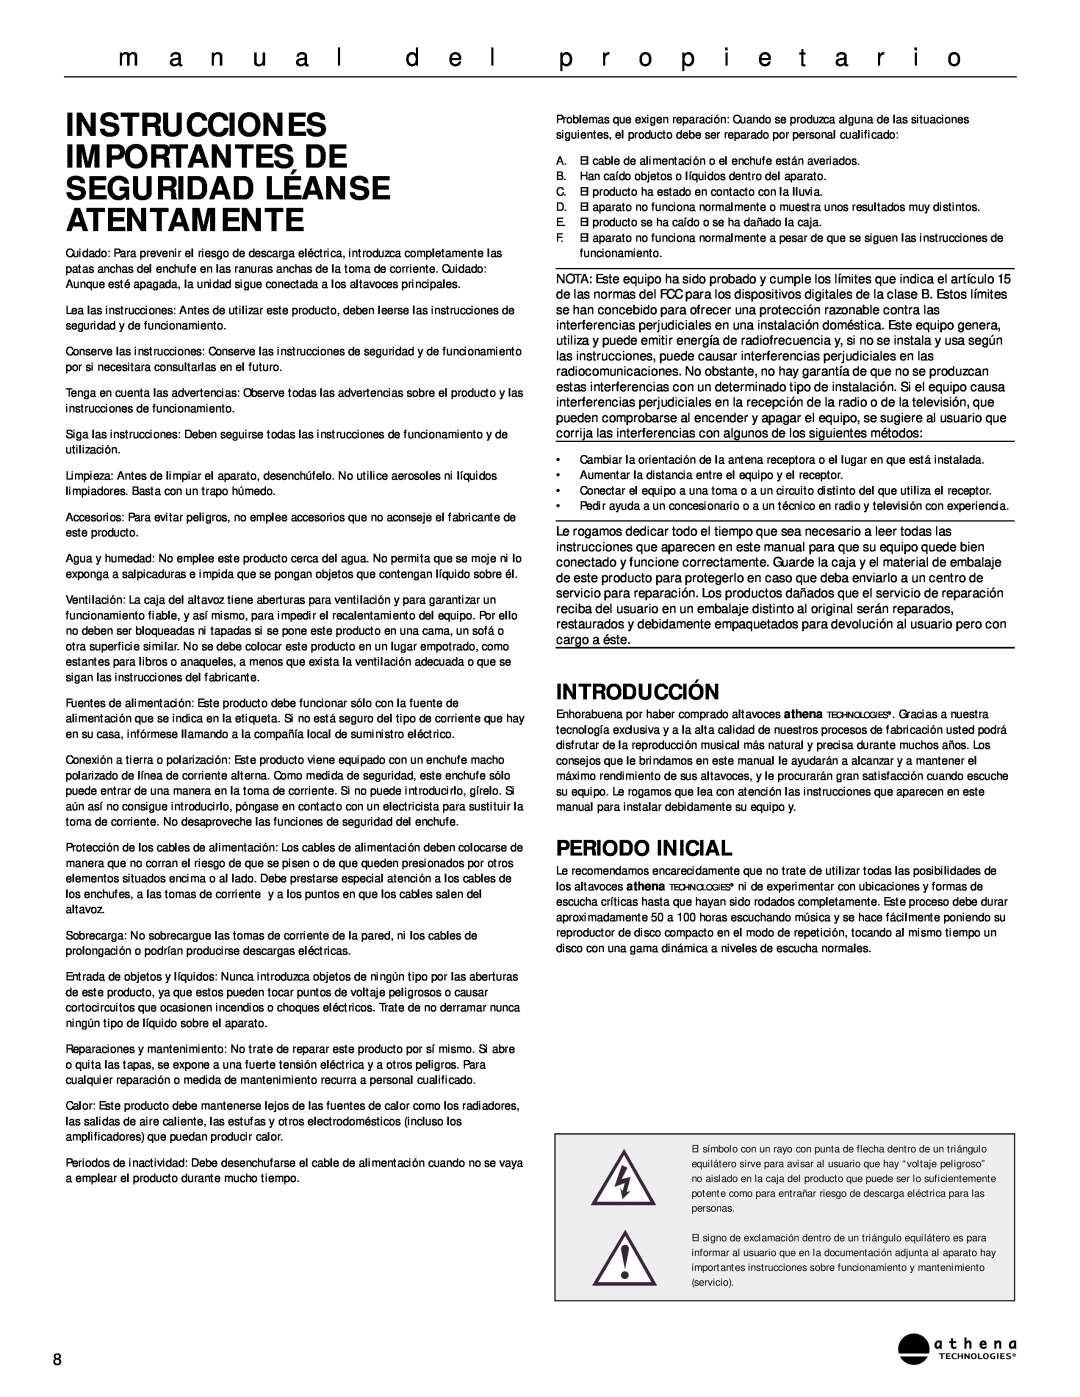 Athena Technologies AS-P400 Instrucciones Importantes De Seguridad Léanse, Atentamente, d e l, p r o p i e t a r i o 